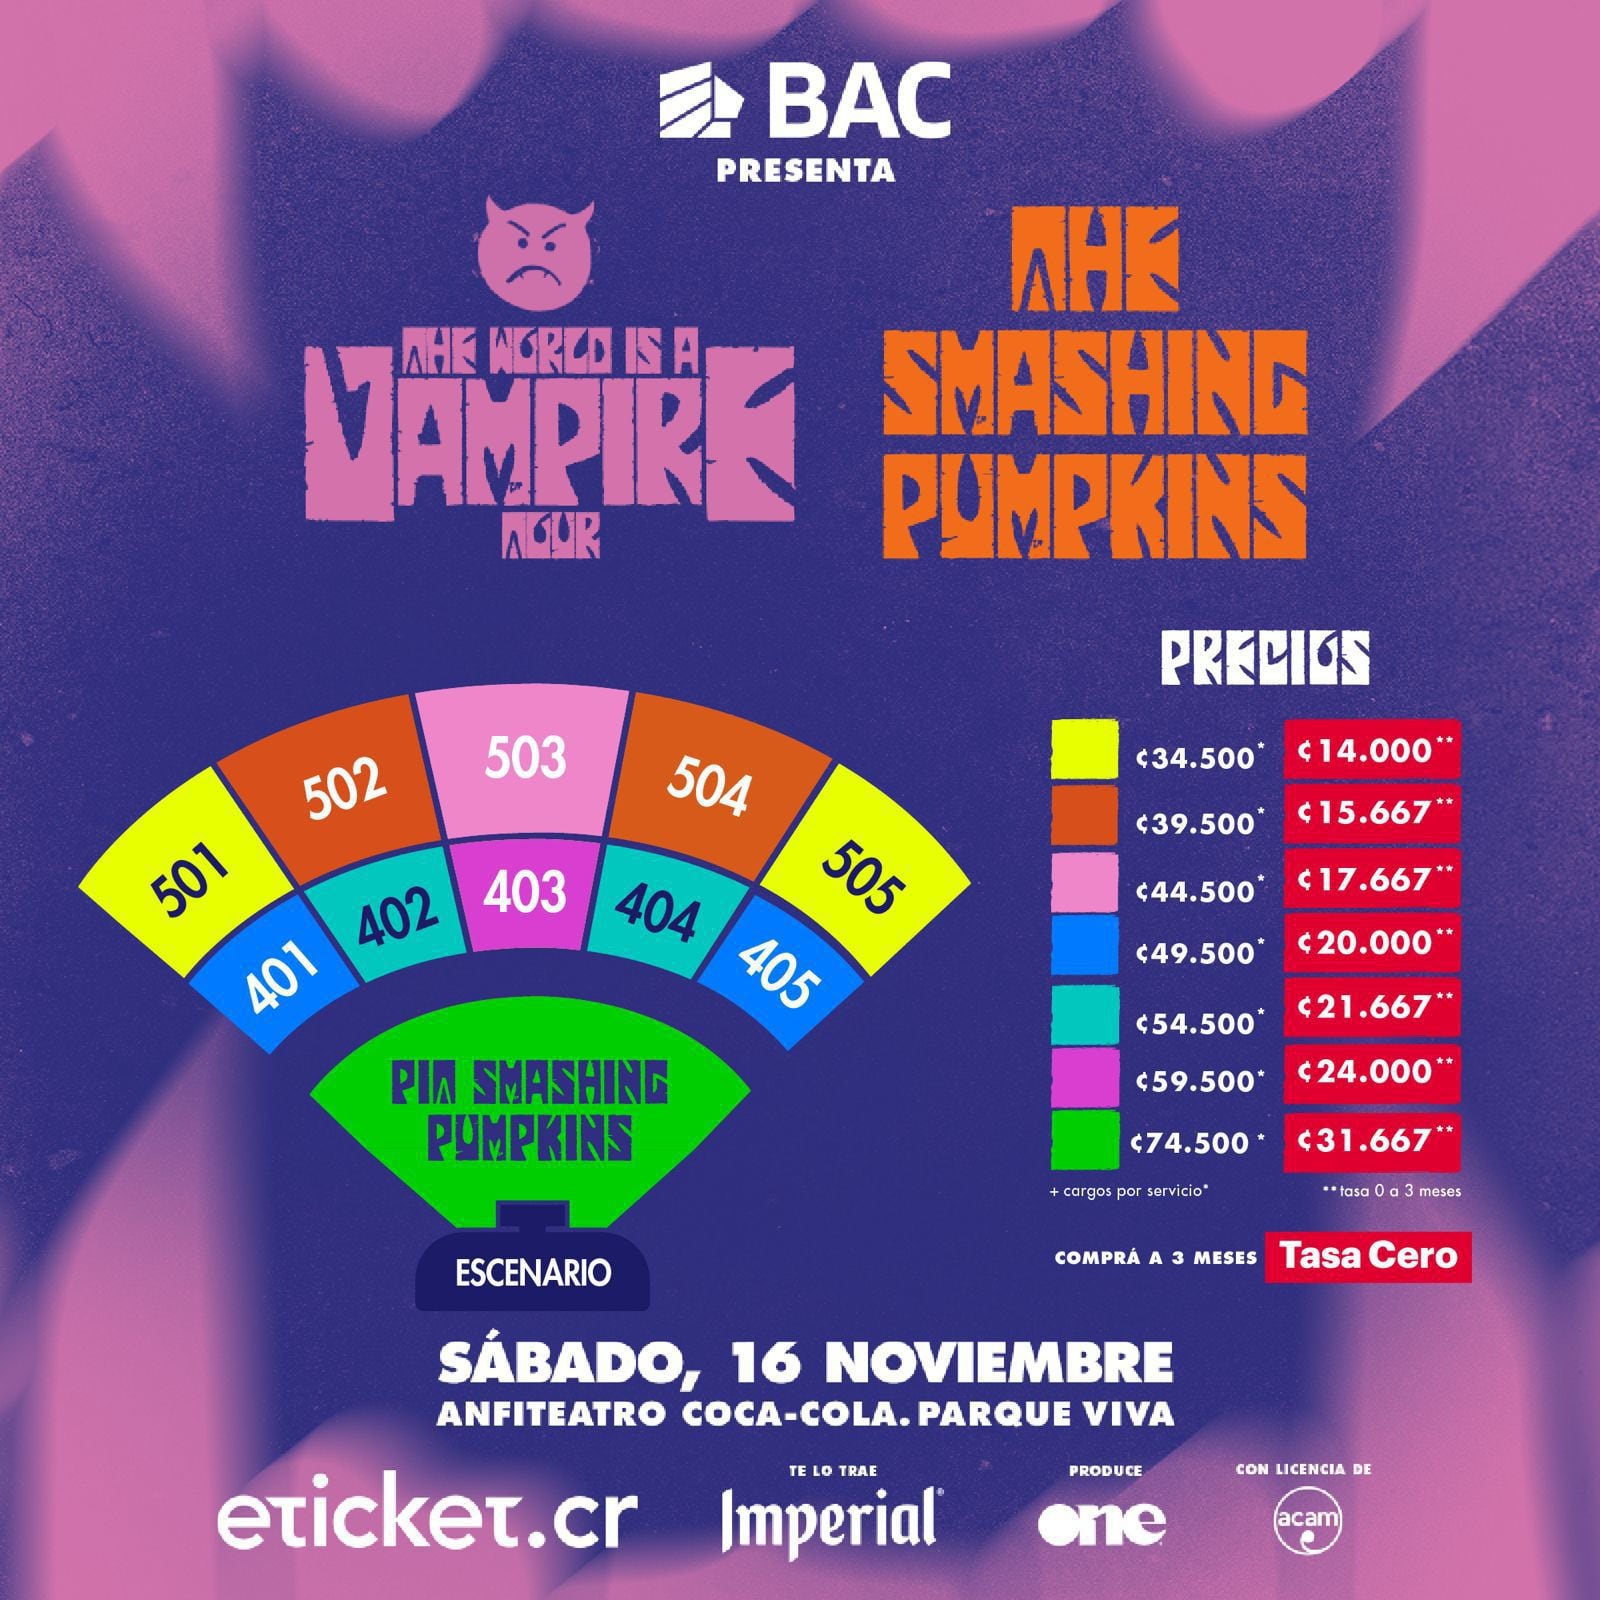 Detalles de las localidades y precios de las entradas para el concierto de Smashing Pumpkins en Costa Rica.